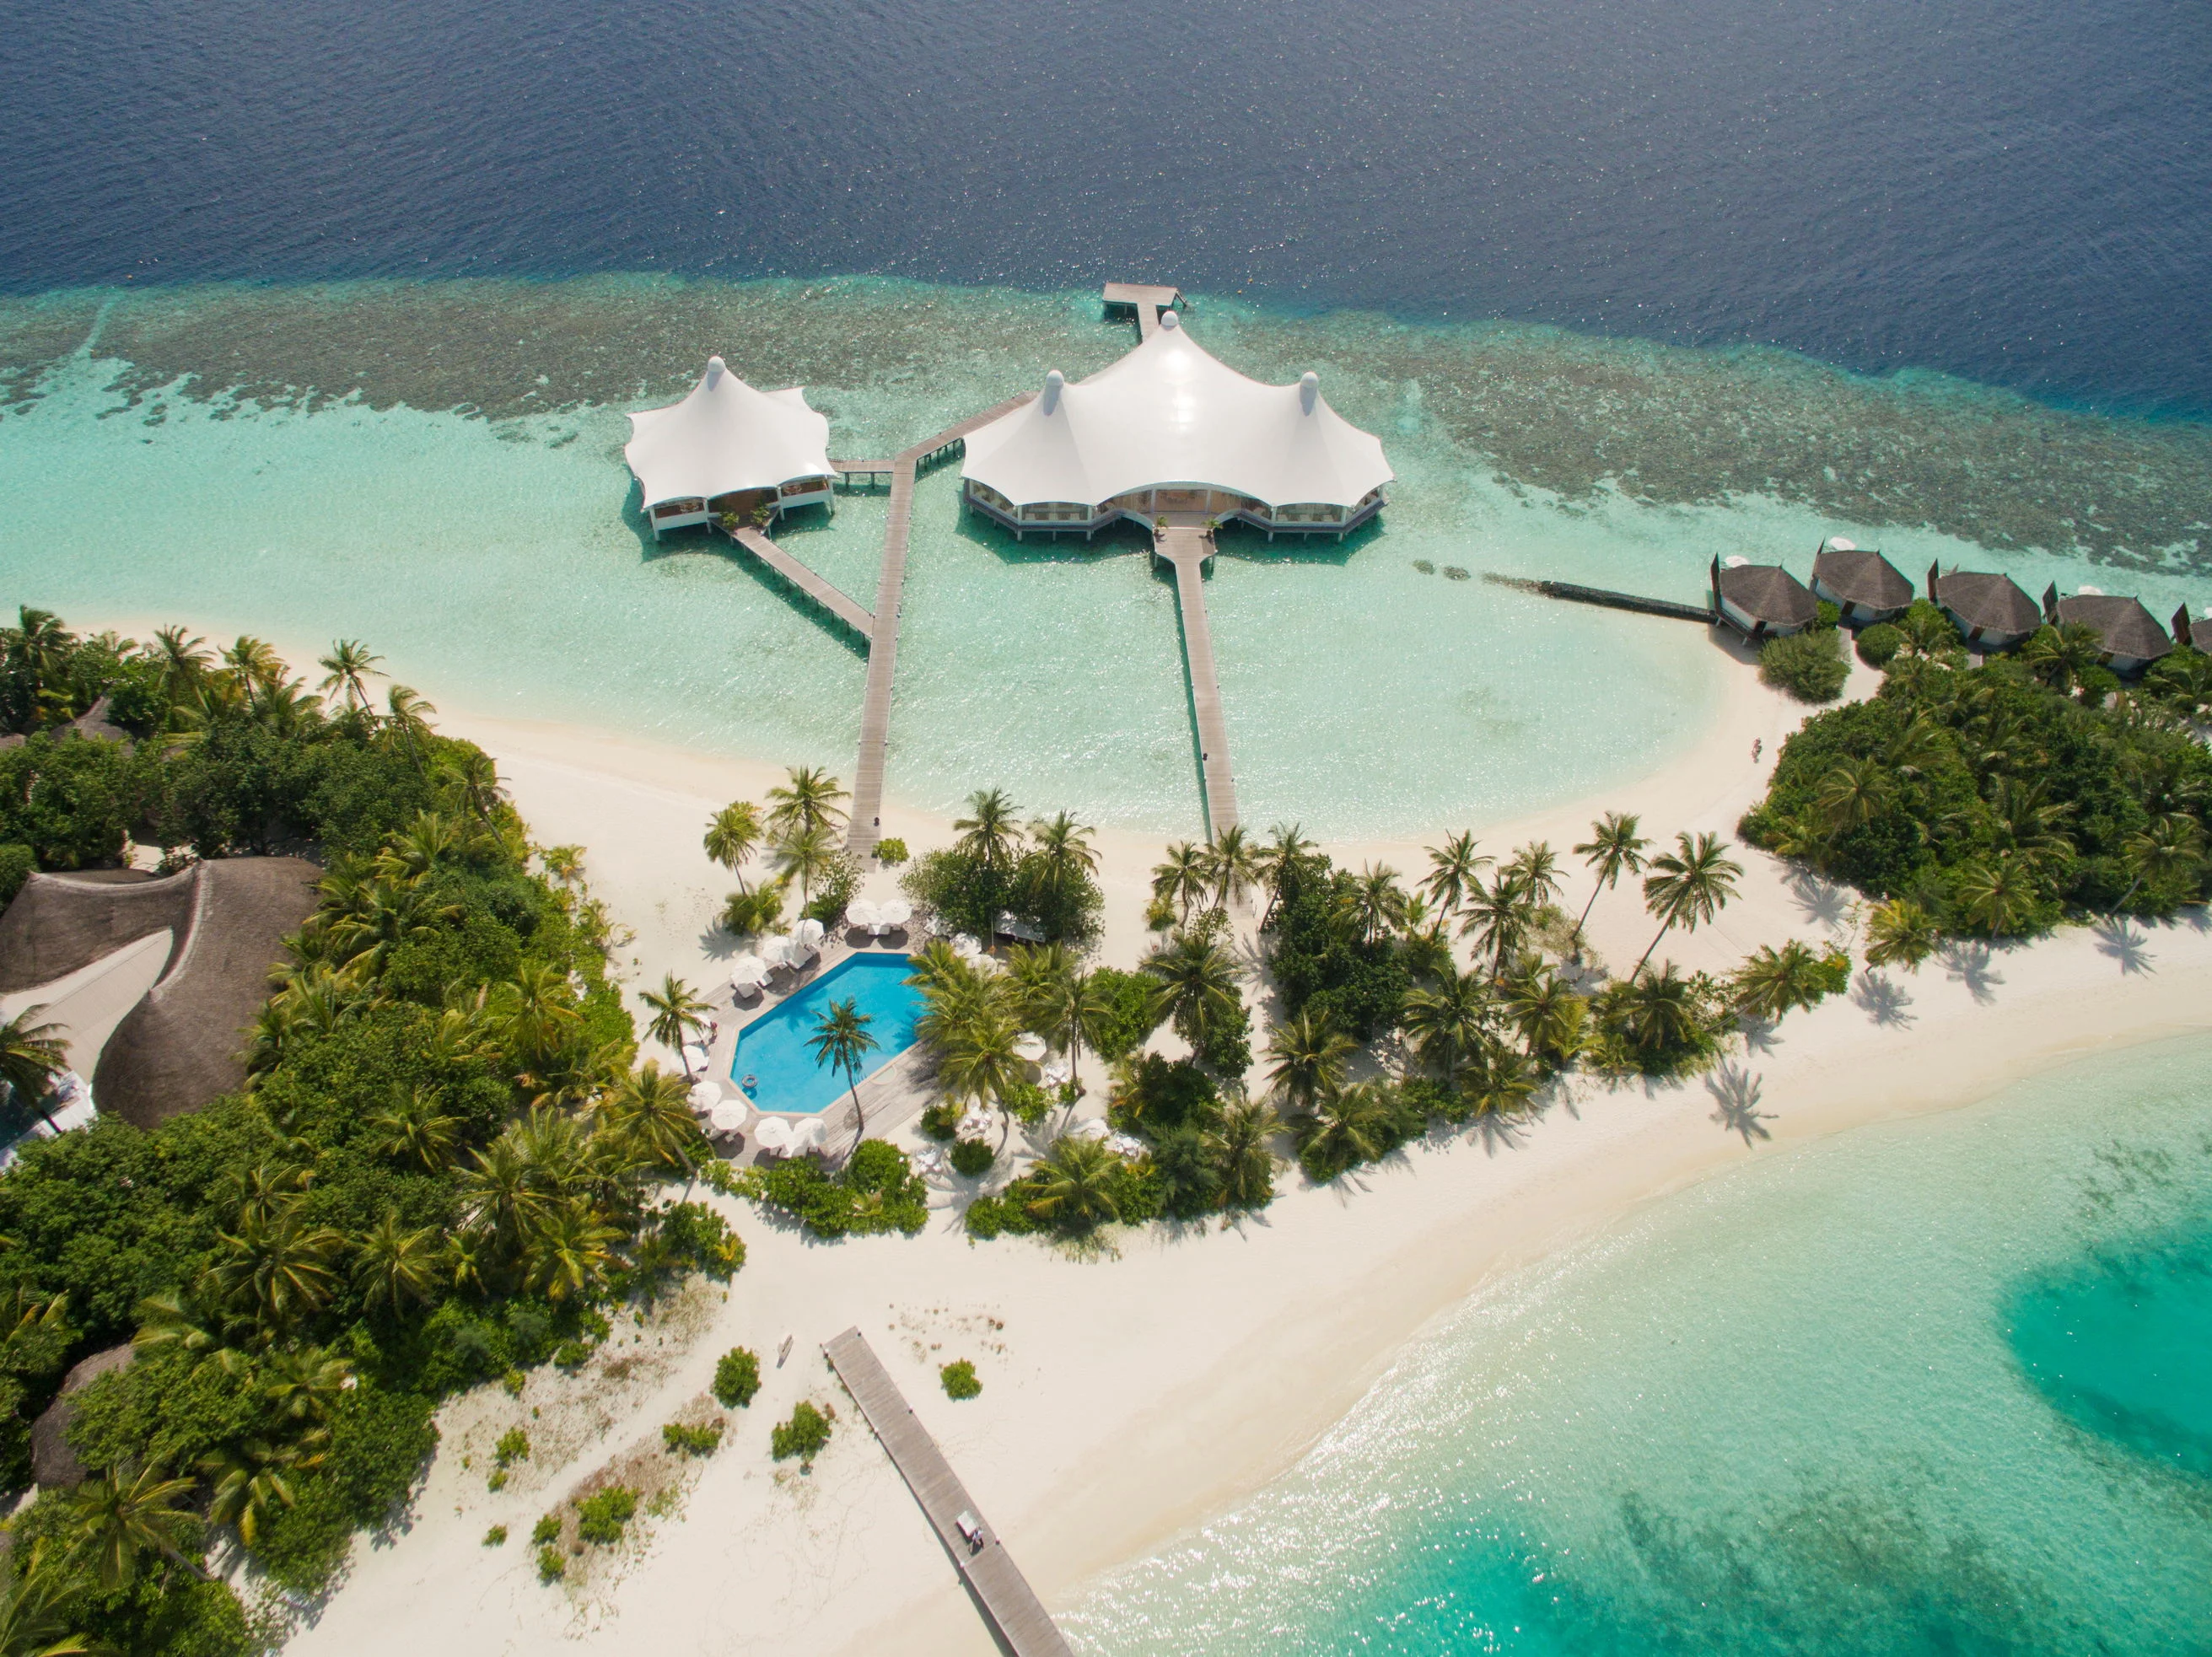 Bandos island resort 4. Сафари Исланд Мальдивы. Safari Island 4 Мальдивы. Бандос Мальдивы 4. Остров Bandos Мальдивы.